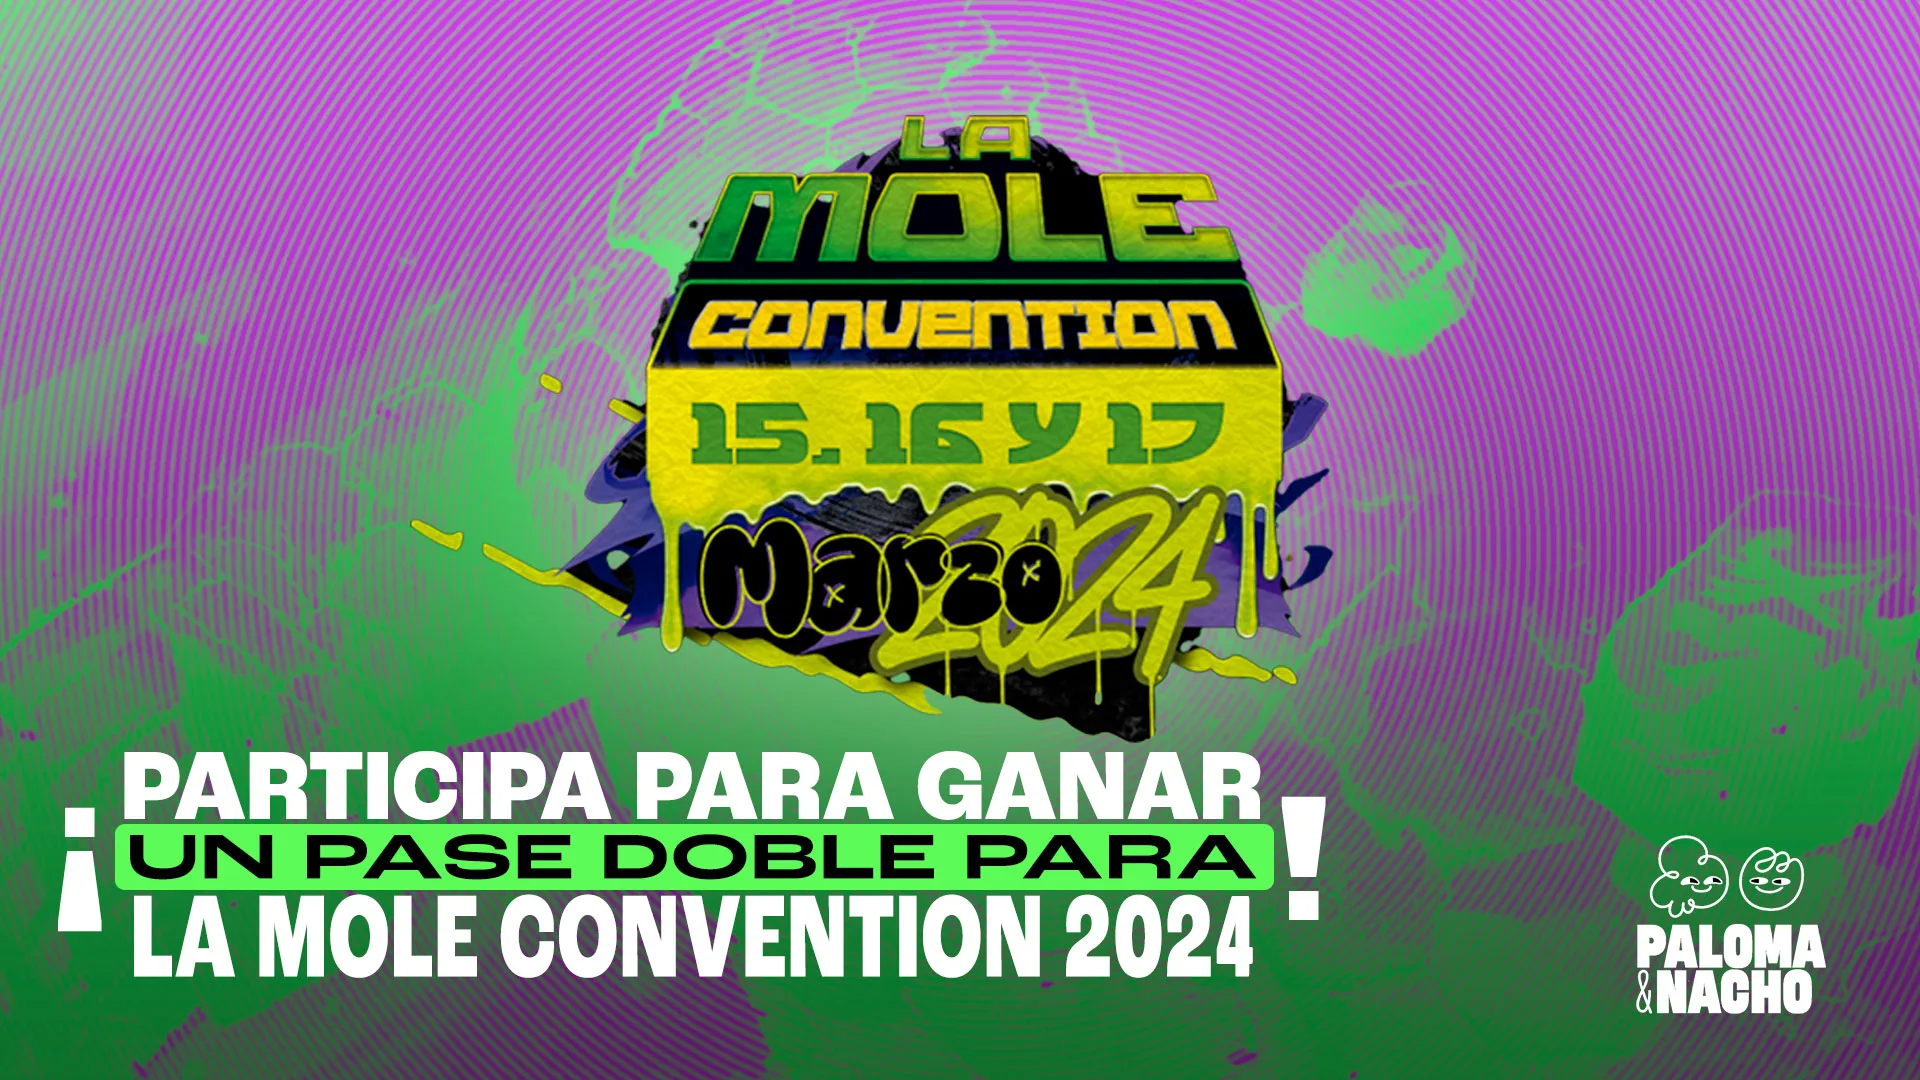 La Mole Convention 2024 cómo ganar boletos